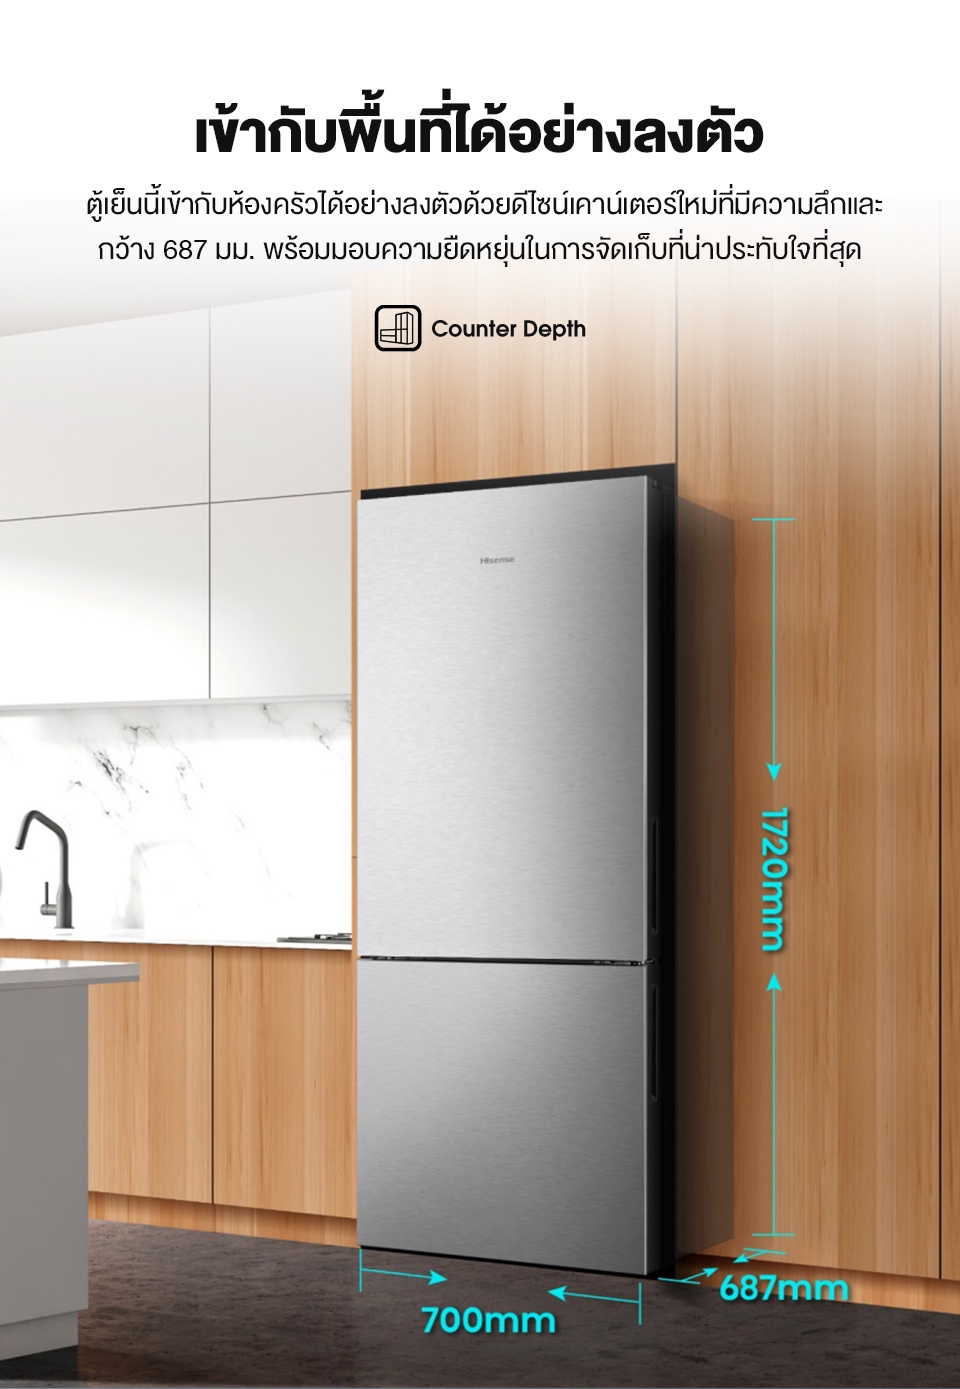 คำอธิบายเพิ่มเติมเกี่ยวกับ Hisense: ตู้เย็น 2 ประตู :14.7Q/417 ลิตร รุ่น RB556N4TGN